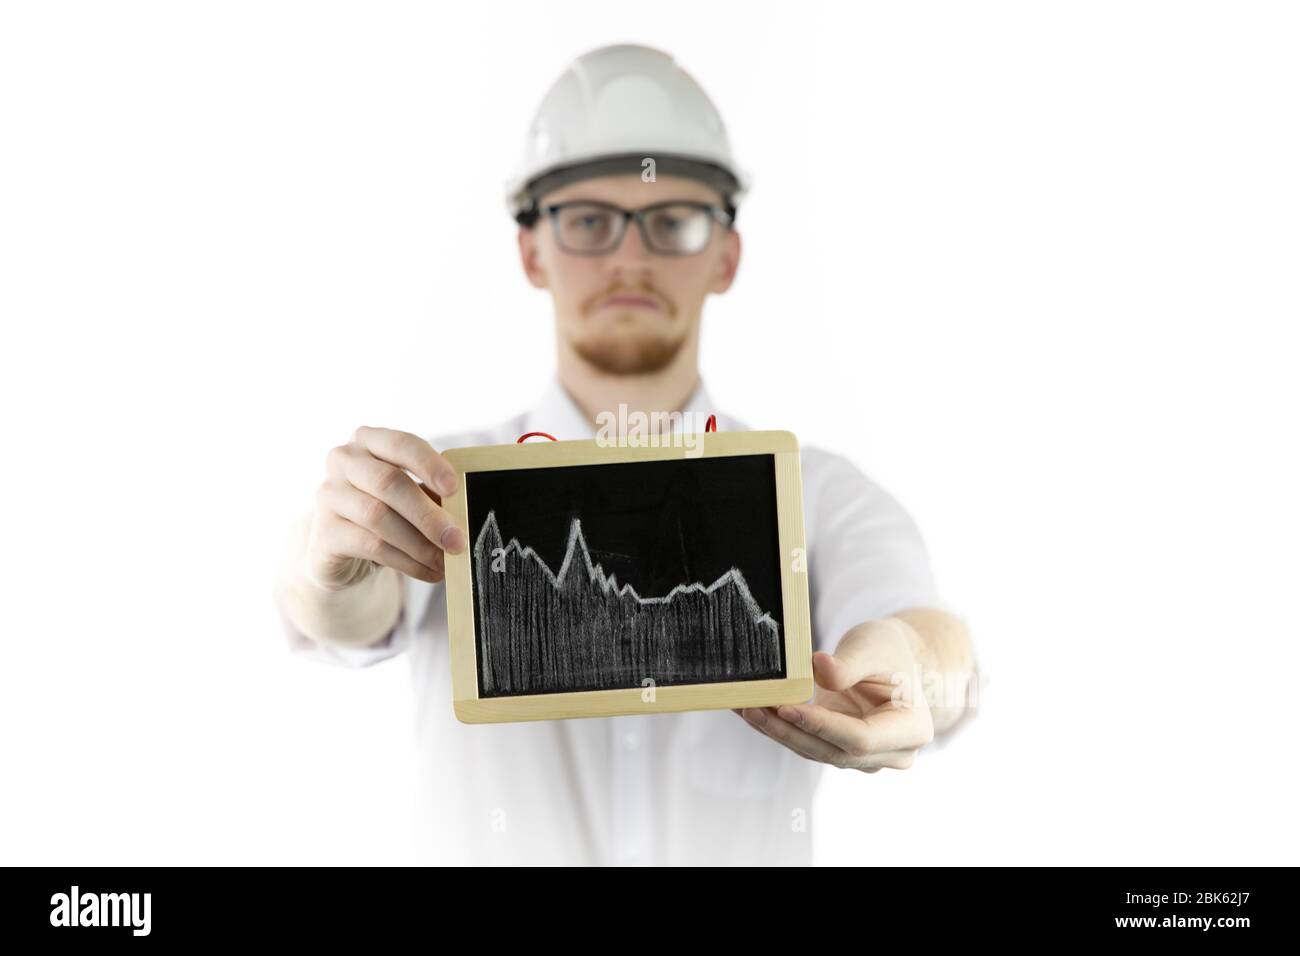 El ingeniero de minería que sostiene la tableta con el gráfico que cae mira tristemente a la cámara Foto de stock